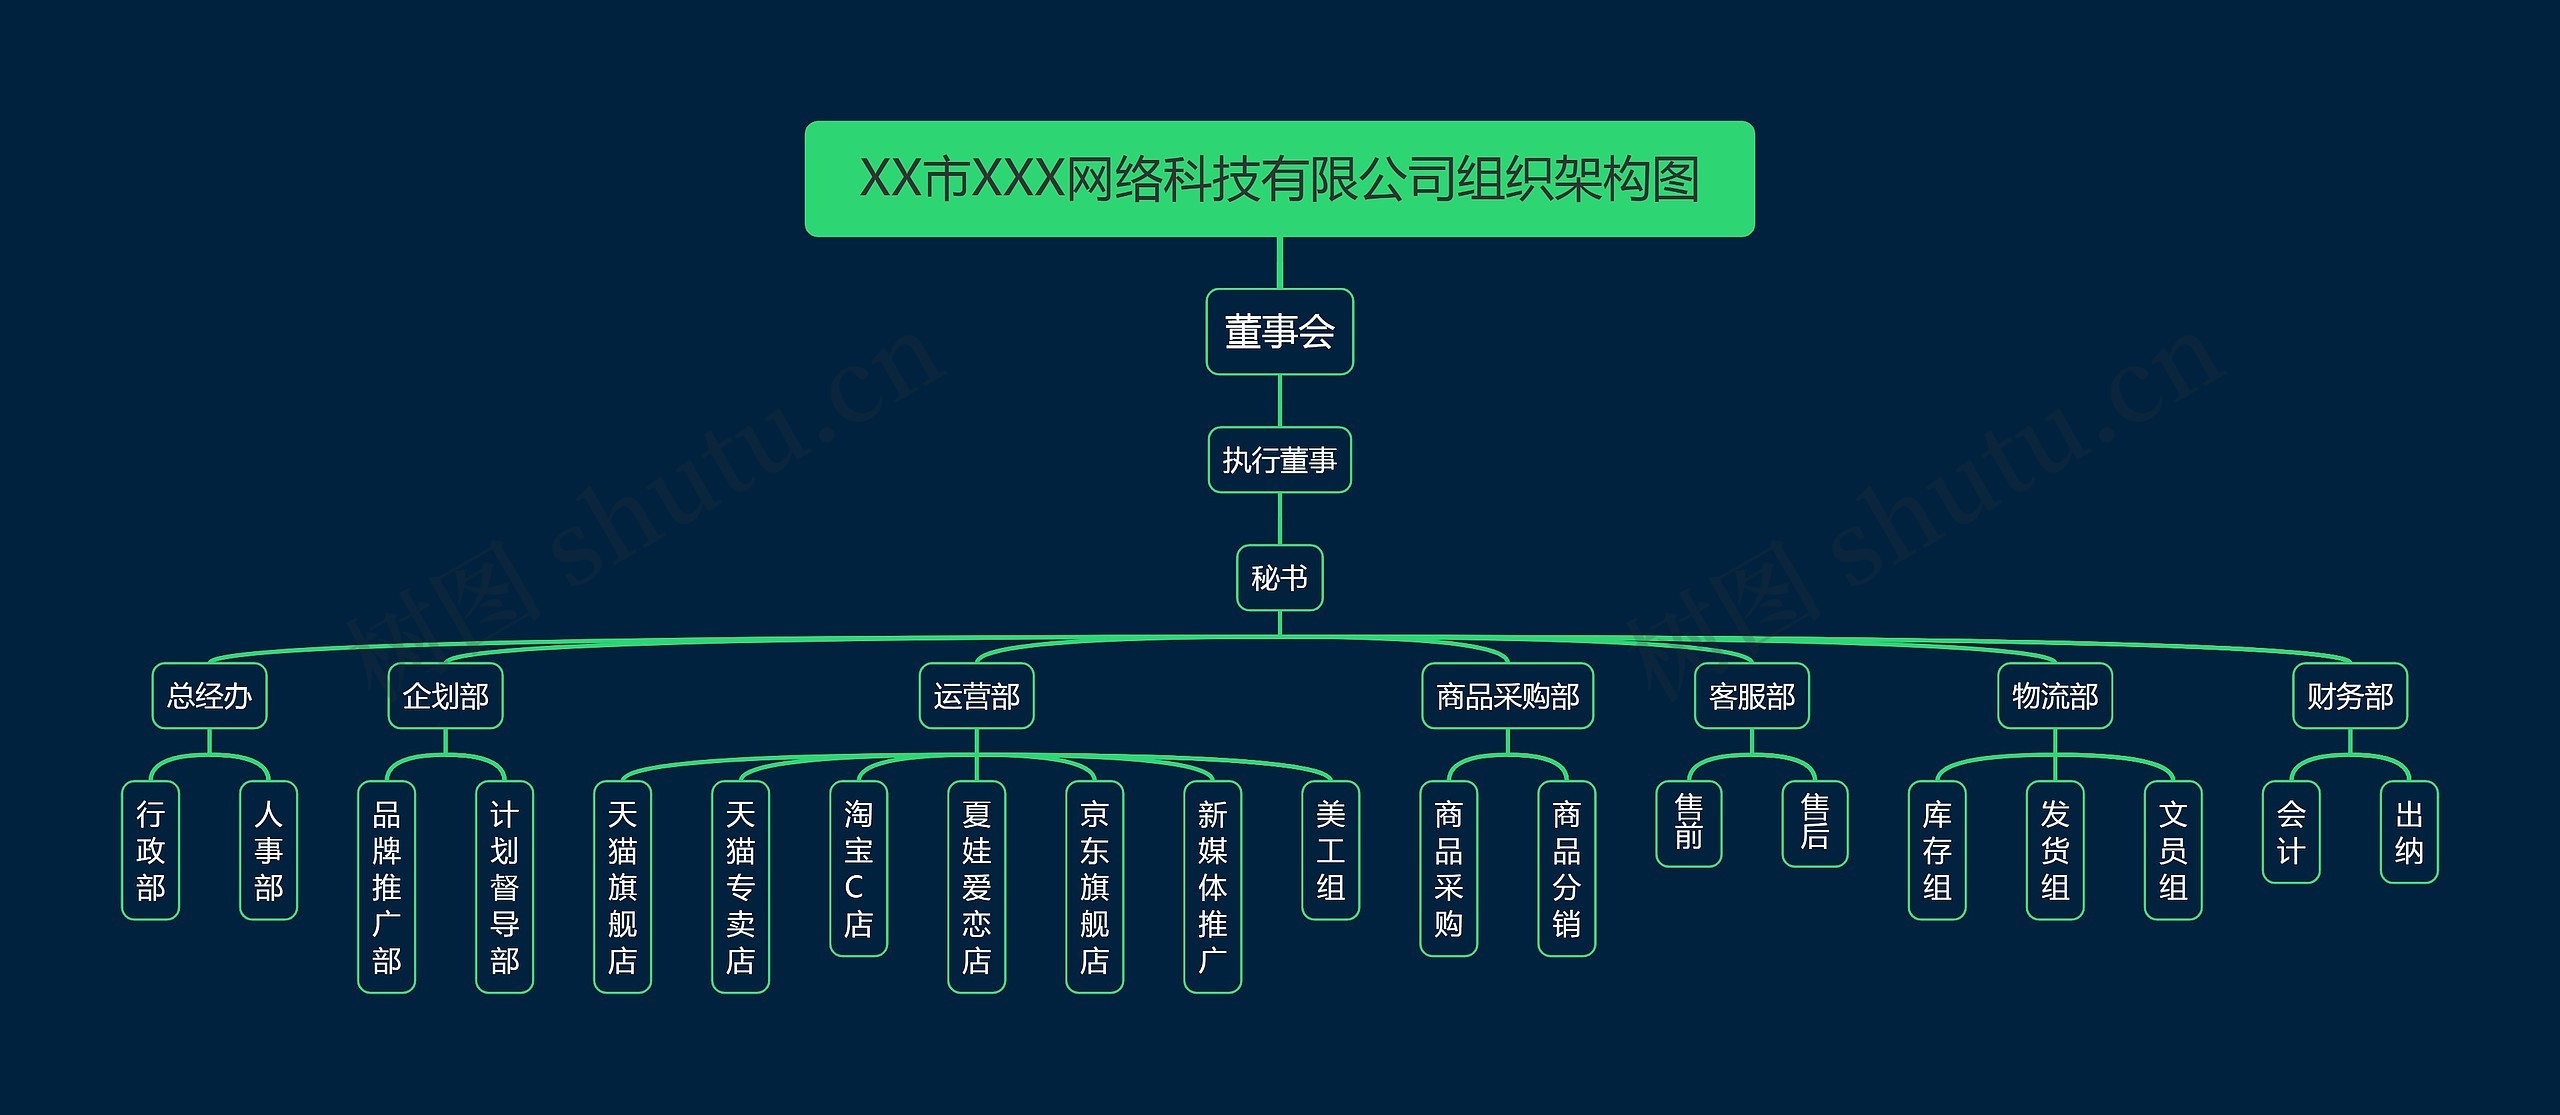 XX市XXX网络科技有限公司组织架构图
